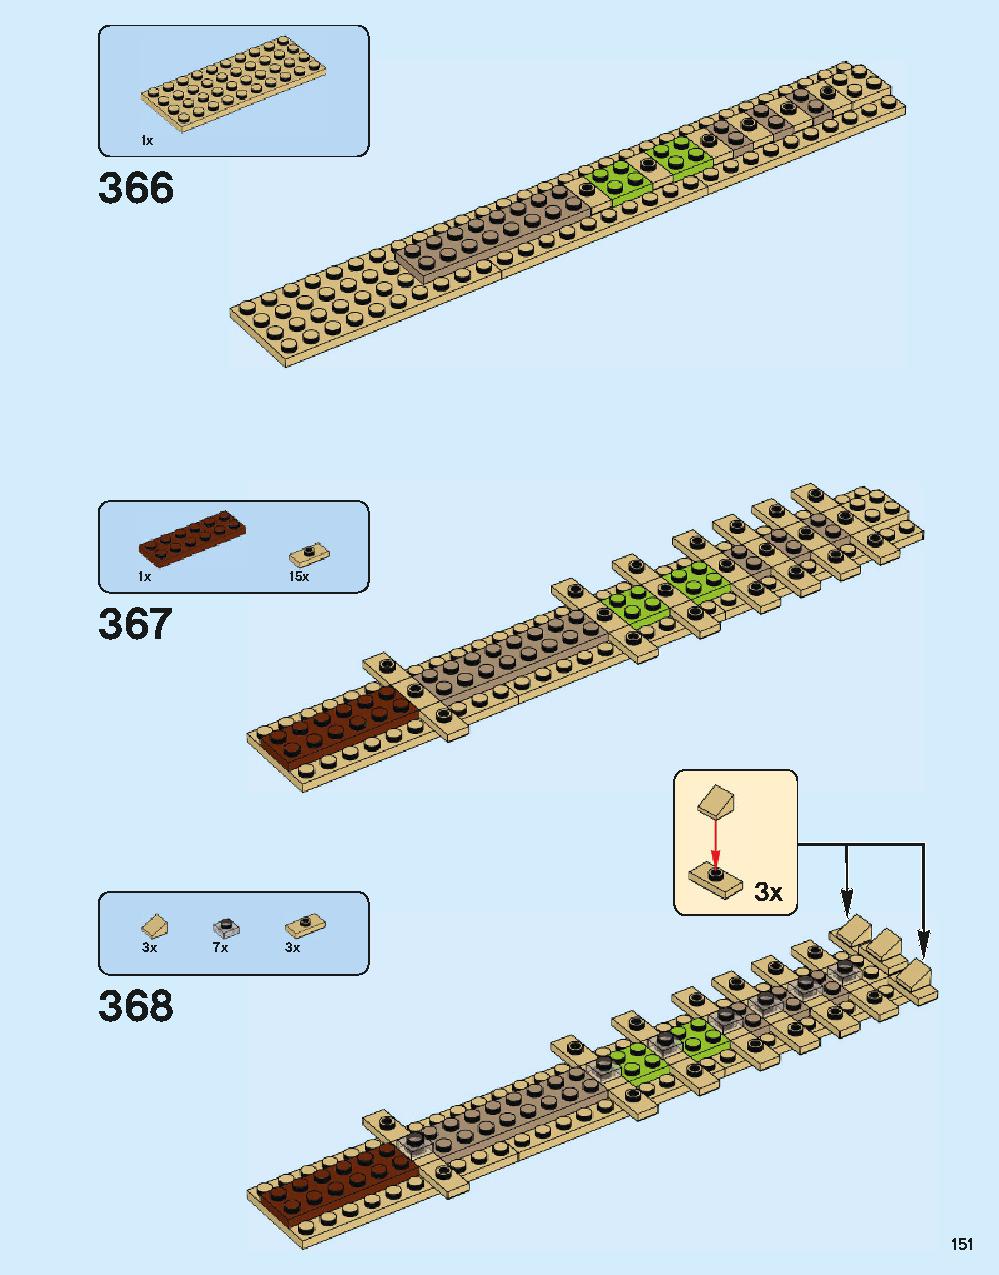 ホグワーツ城 71043 レゴの商品情報 レゴの説明書・組立方法 151 page